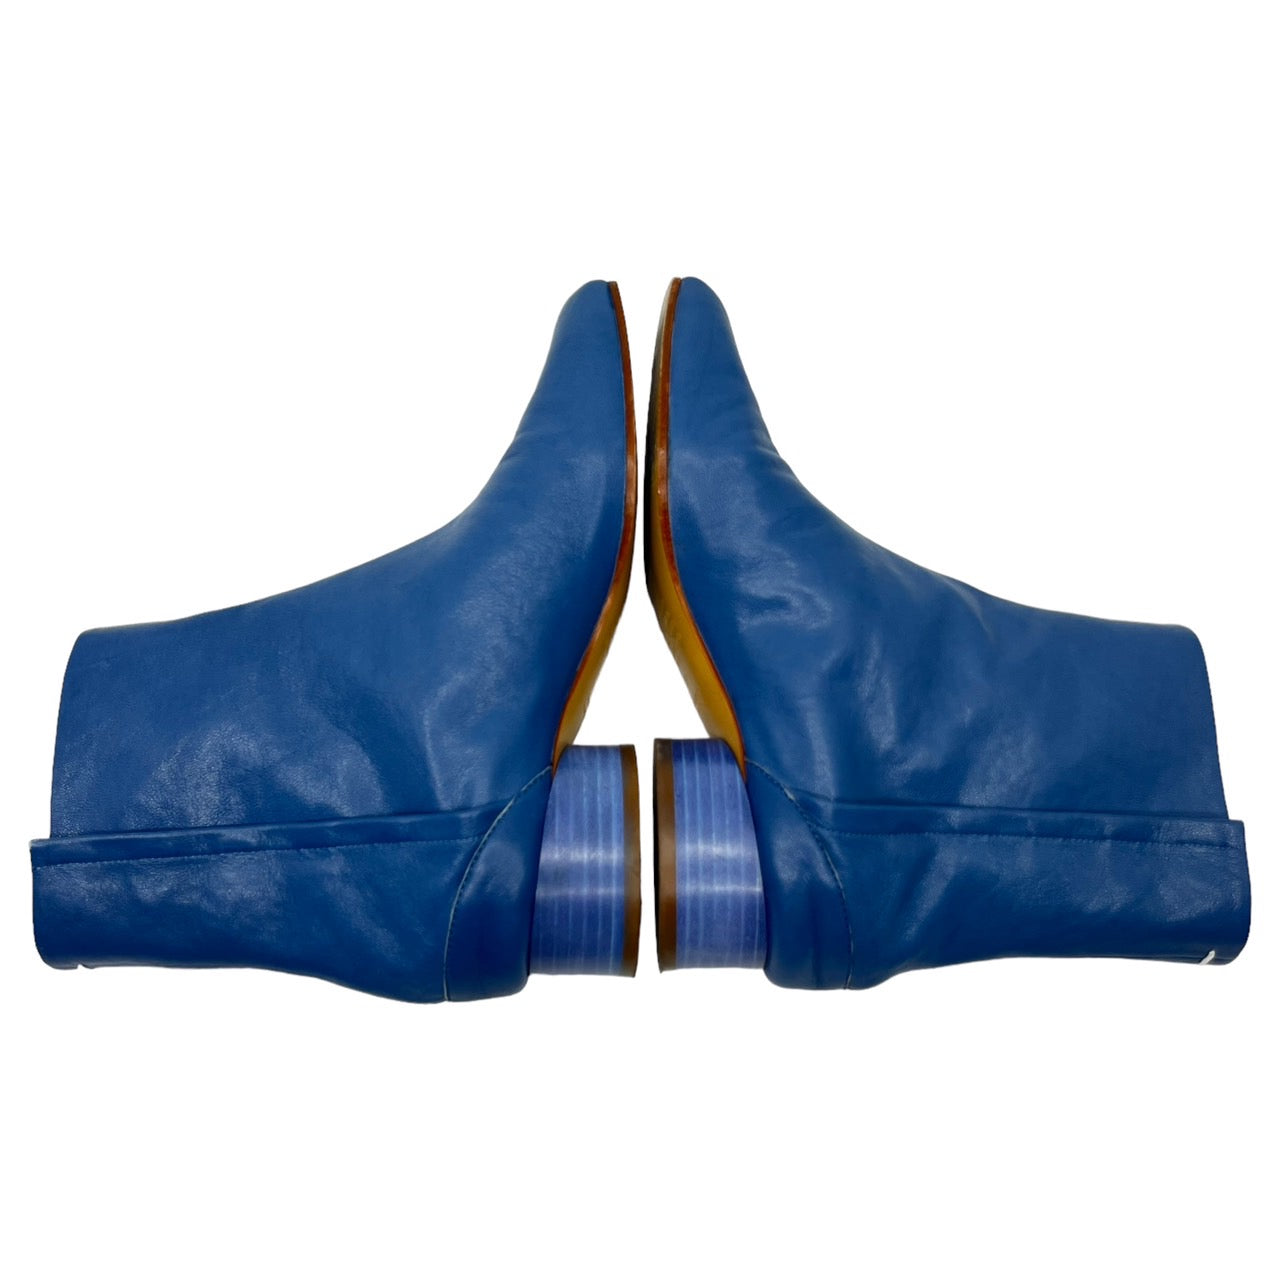 MAISON MARGIELA(メゾンマルジェラ) TABI short boots/足袋ショートブーツ S58WU0273 SIZE  36(23.0cm) ブルー 箱付